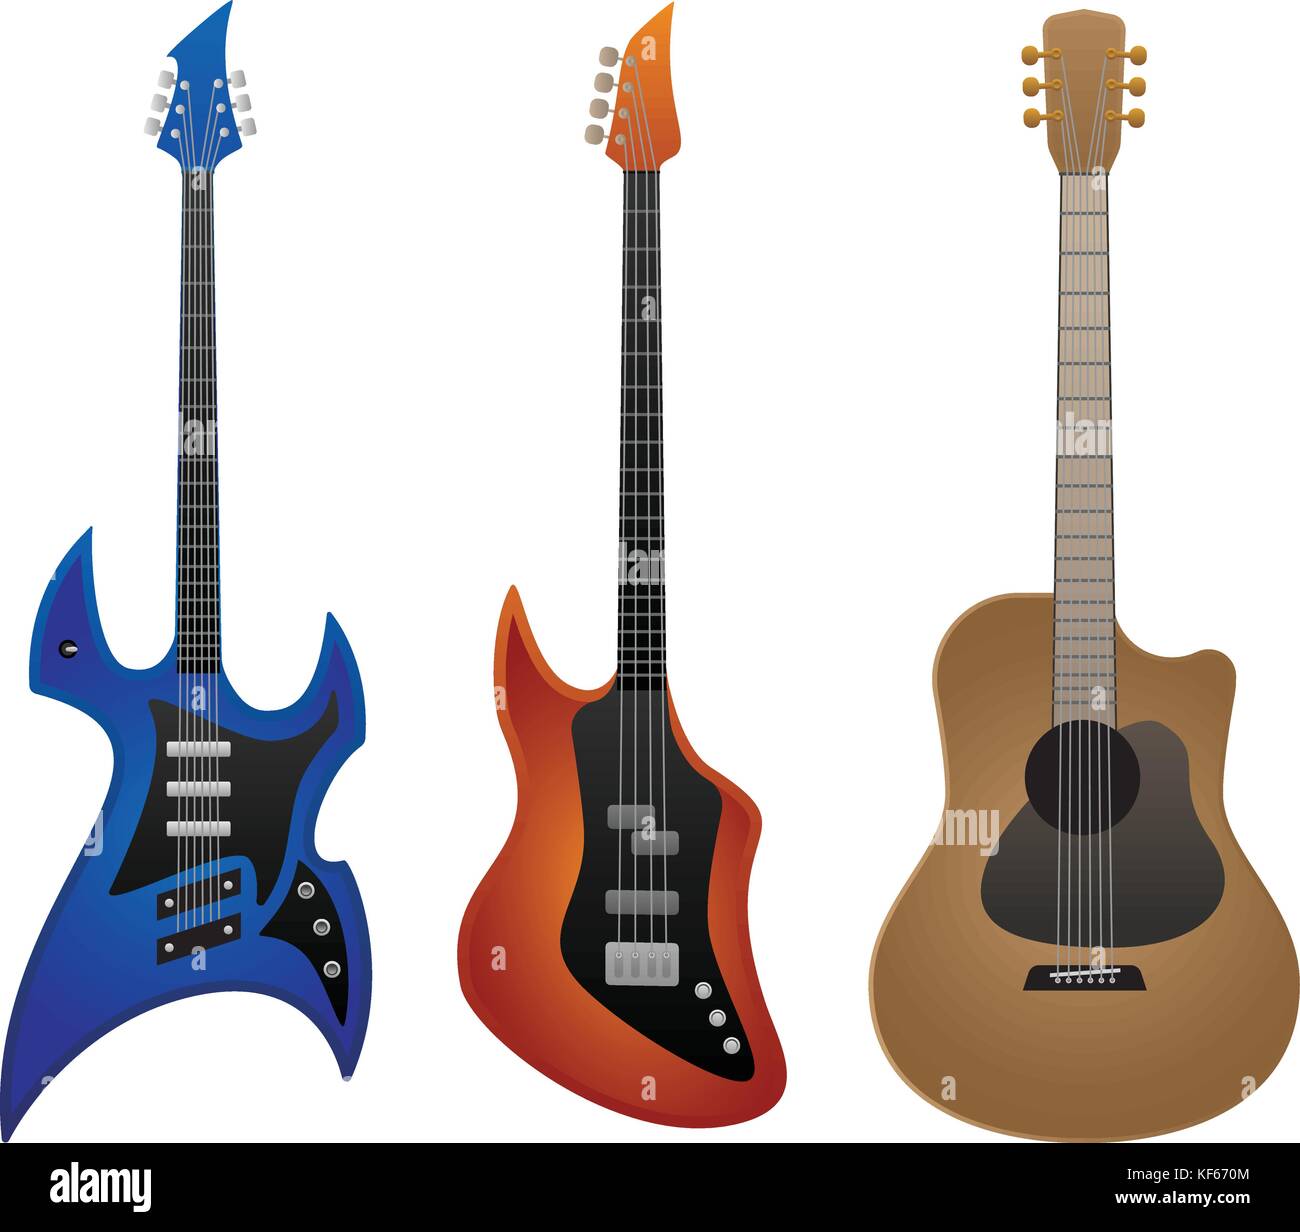 Rock électrique guitare, guitare basse et guitare acoustique vector illustration Illustration de Vecteur